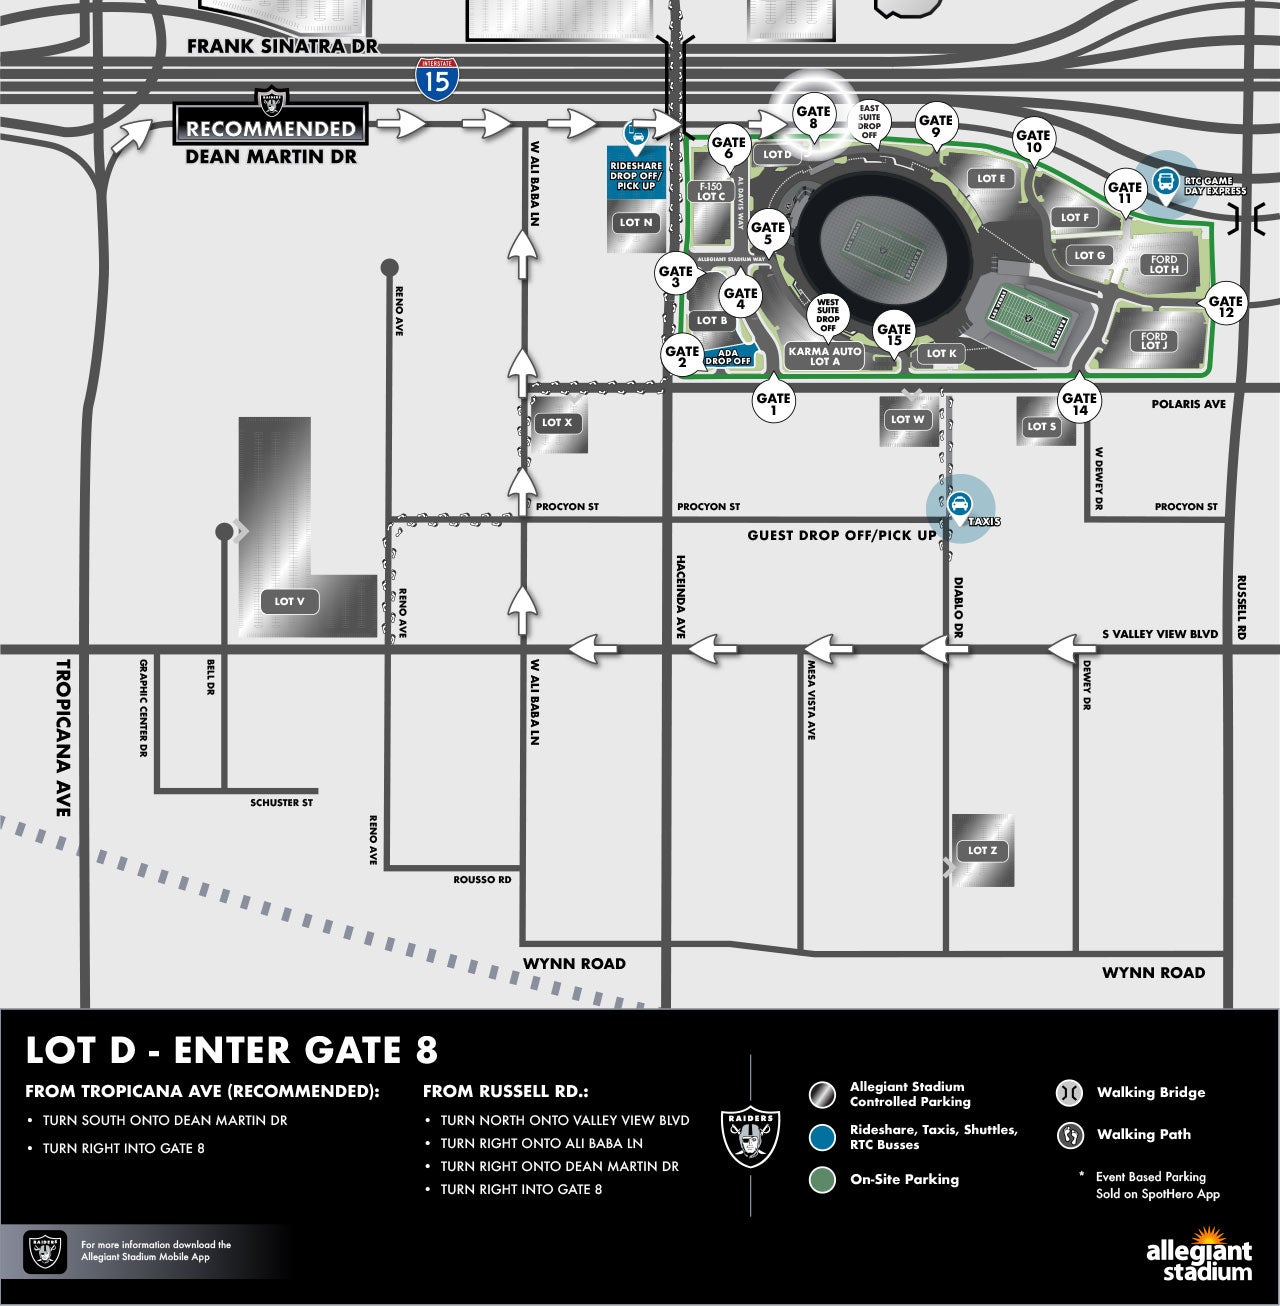 Lot D Parking Map - Enter Gate 8